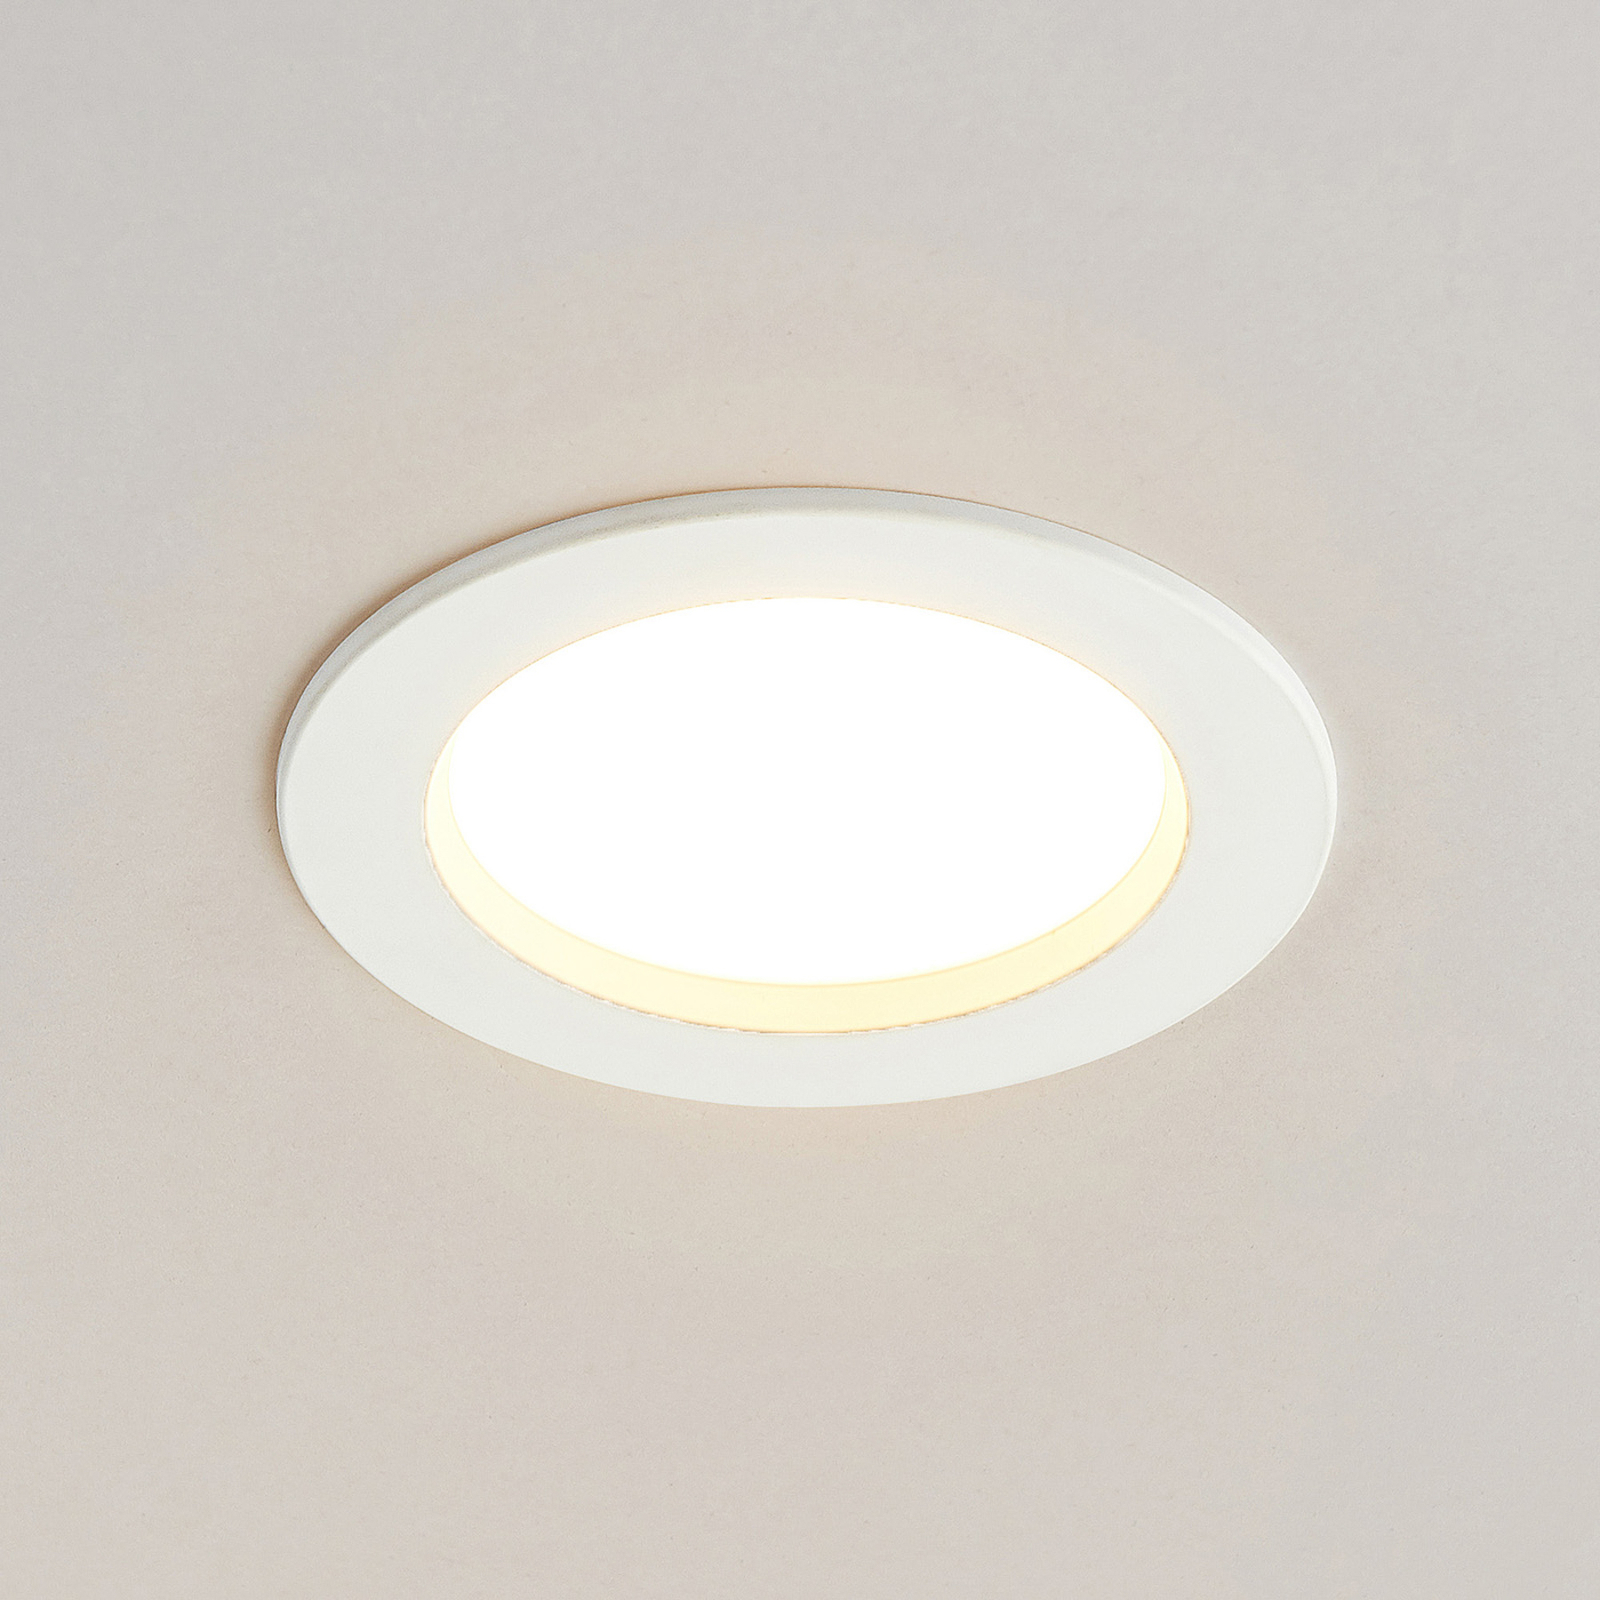 Φωτιστικό εσοχής LED Arcchio Milaine, λευκό, ρυθμιζόμενο, σετ 3 τεμαχίων